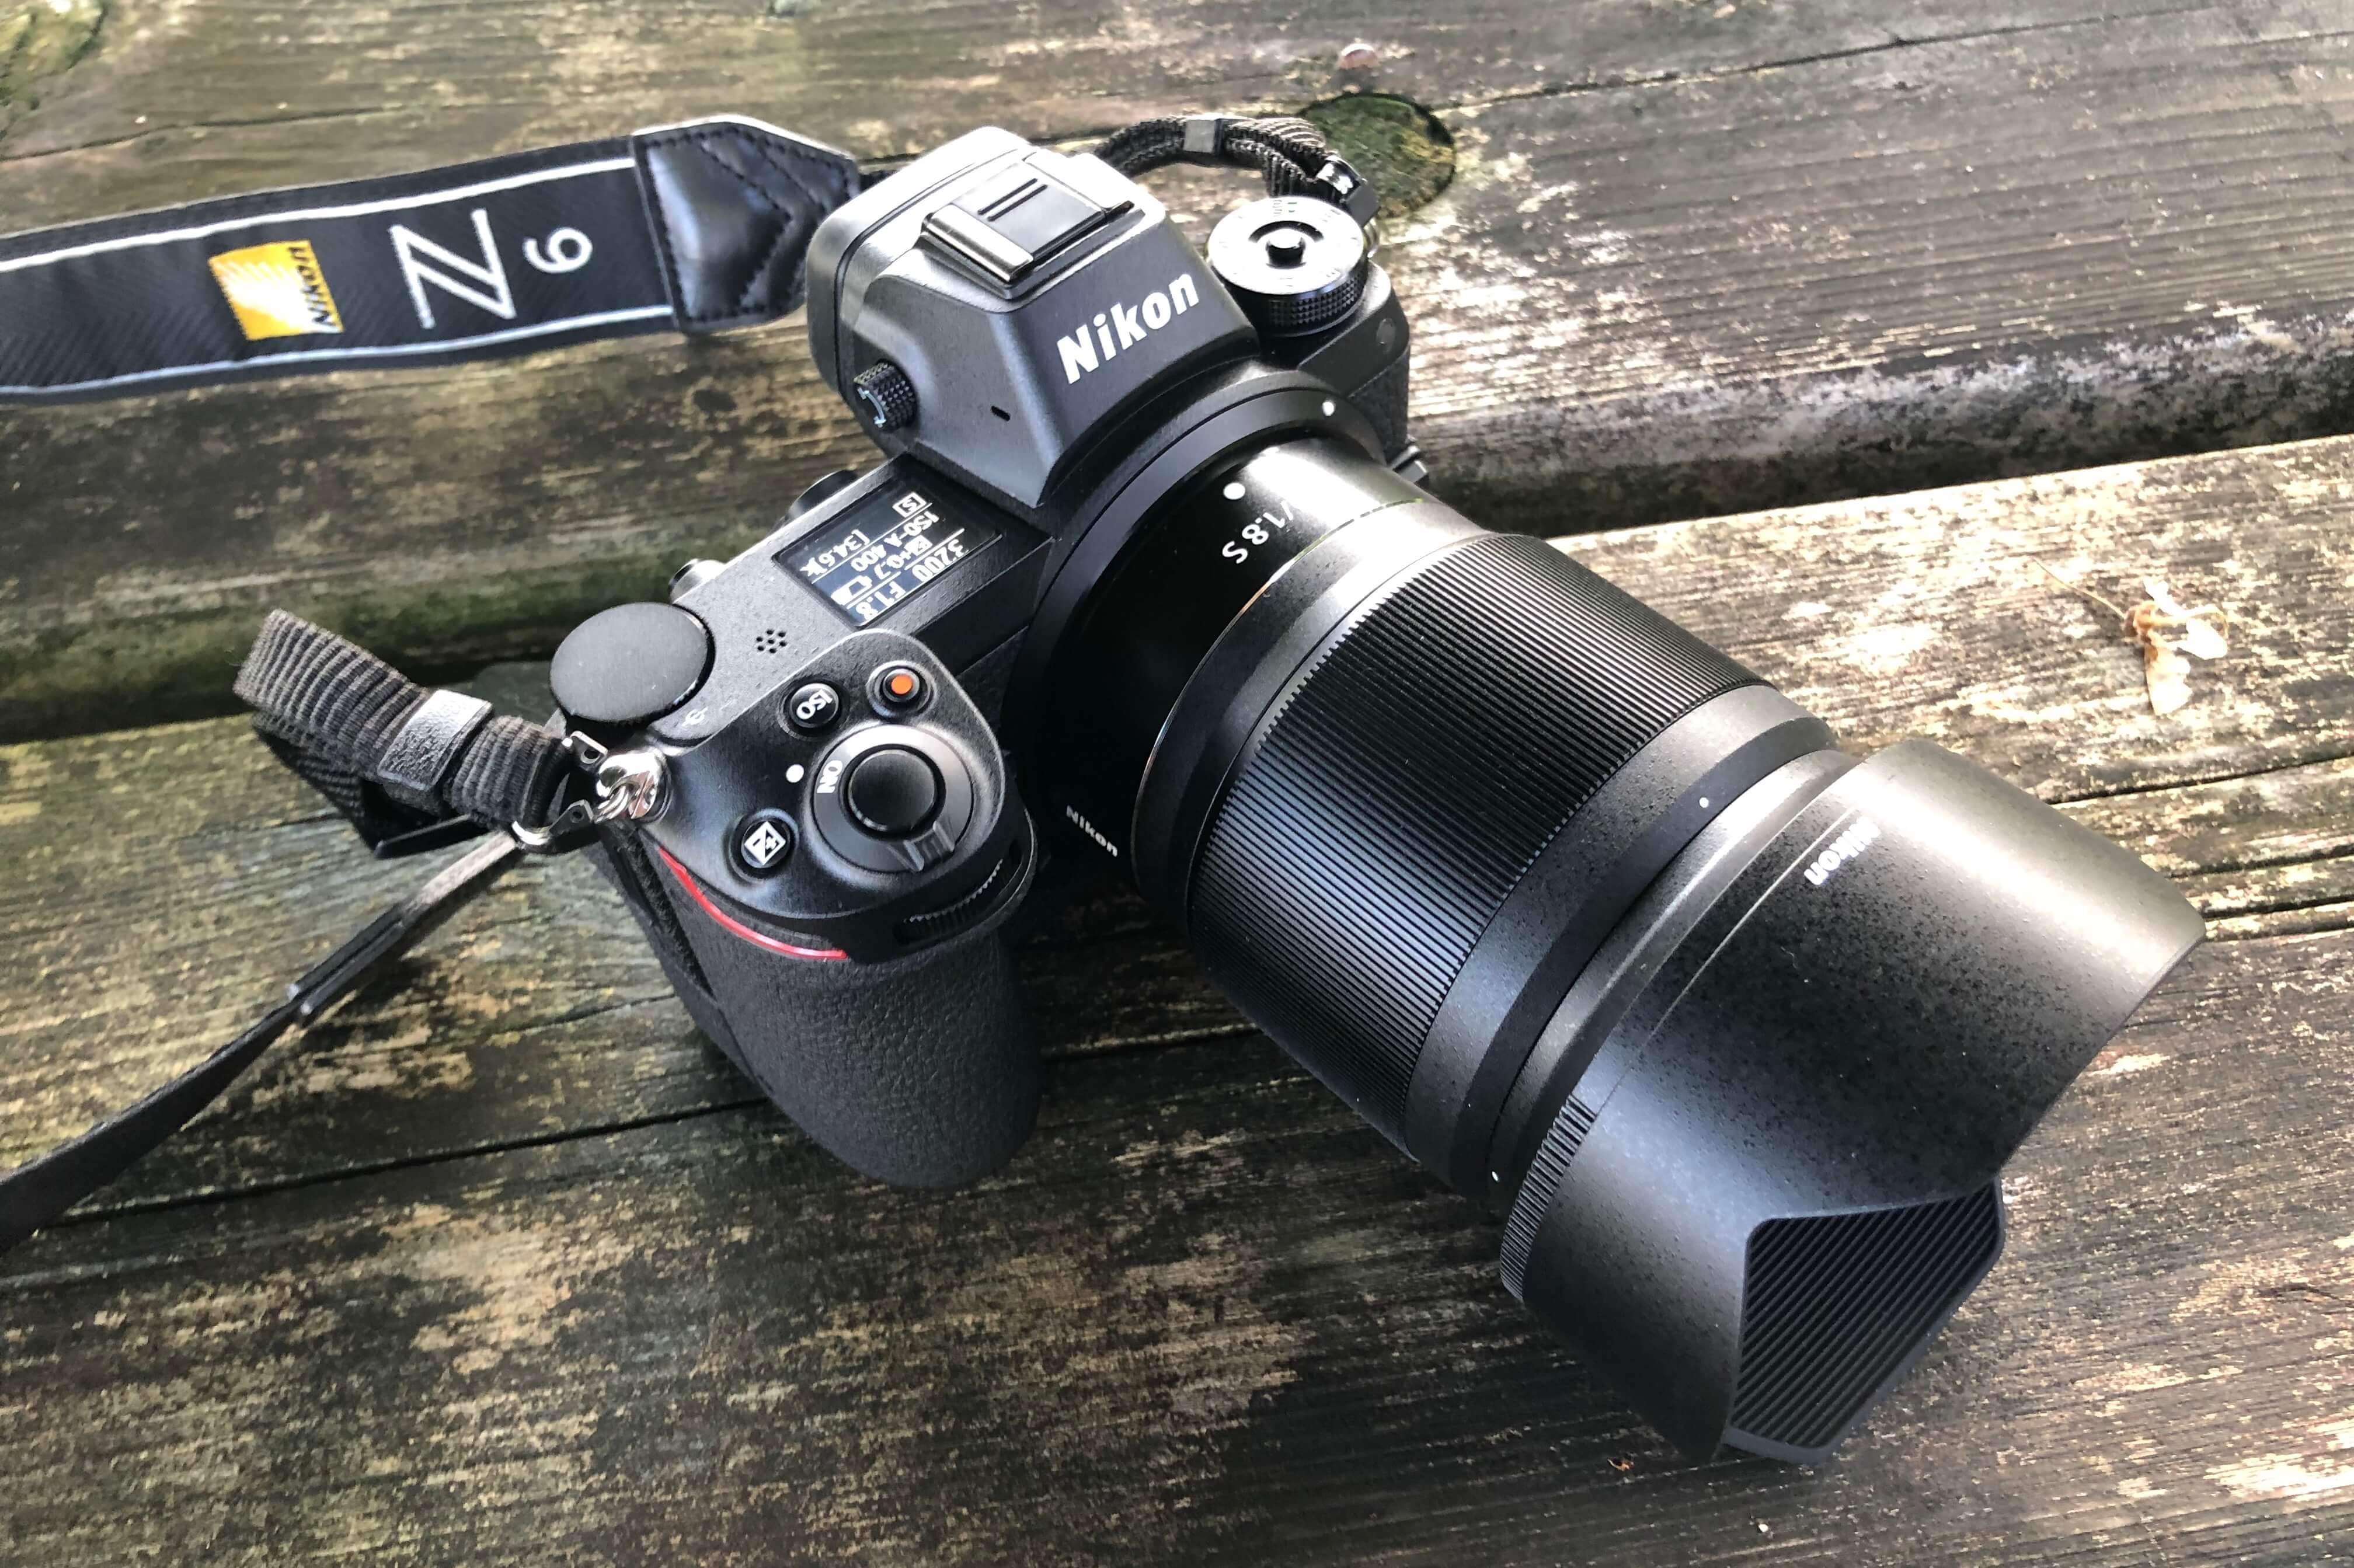 Nikon NIKKOR Z 50F1.8 S